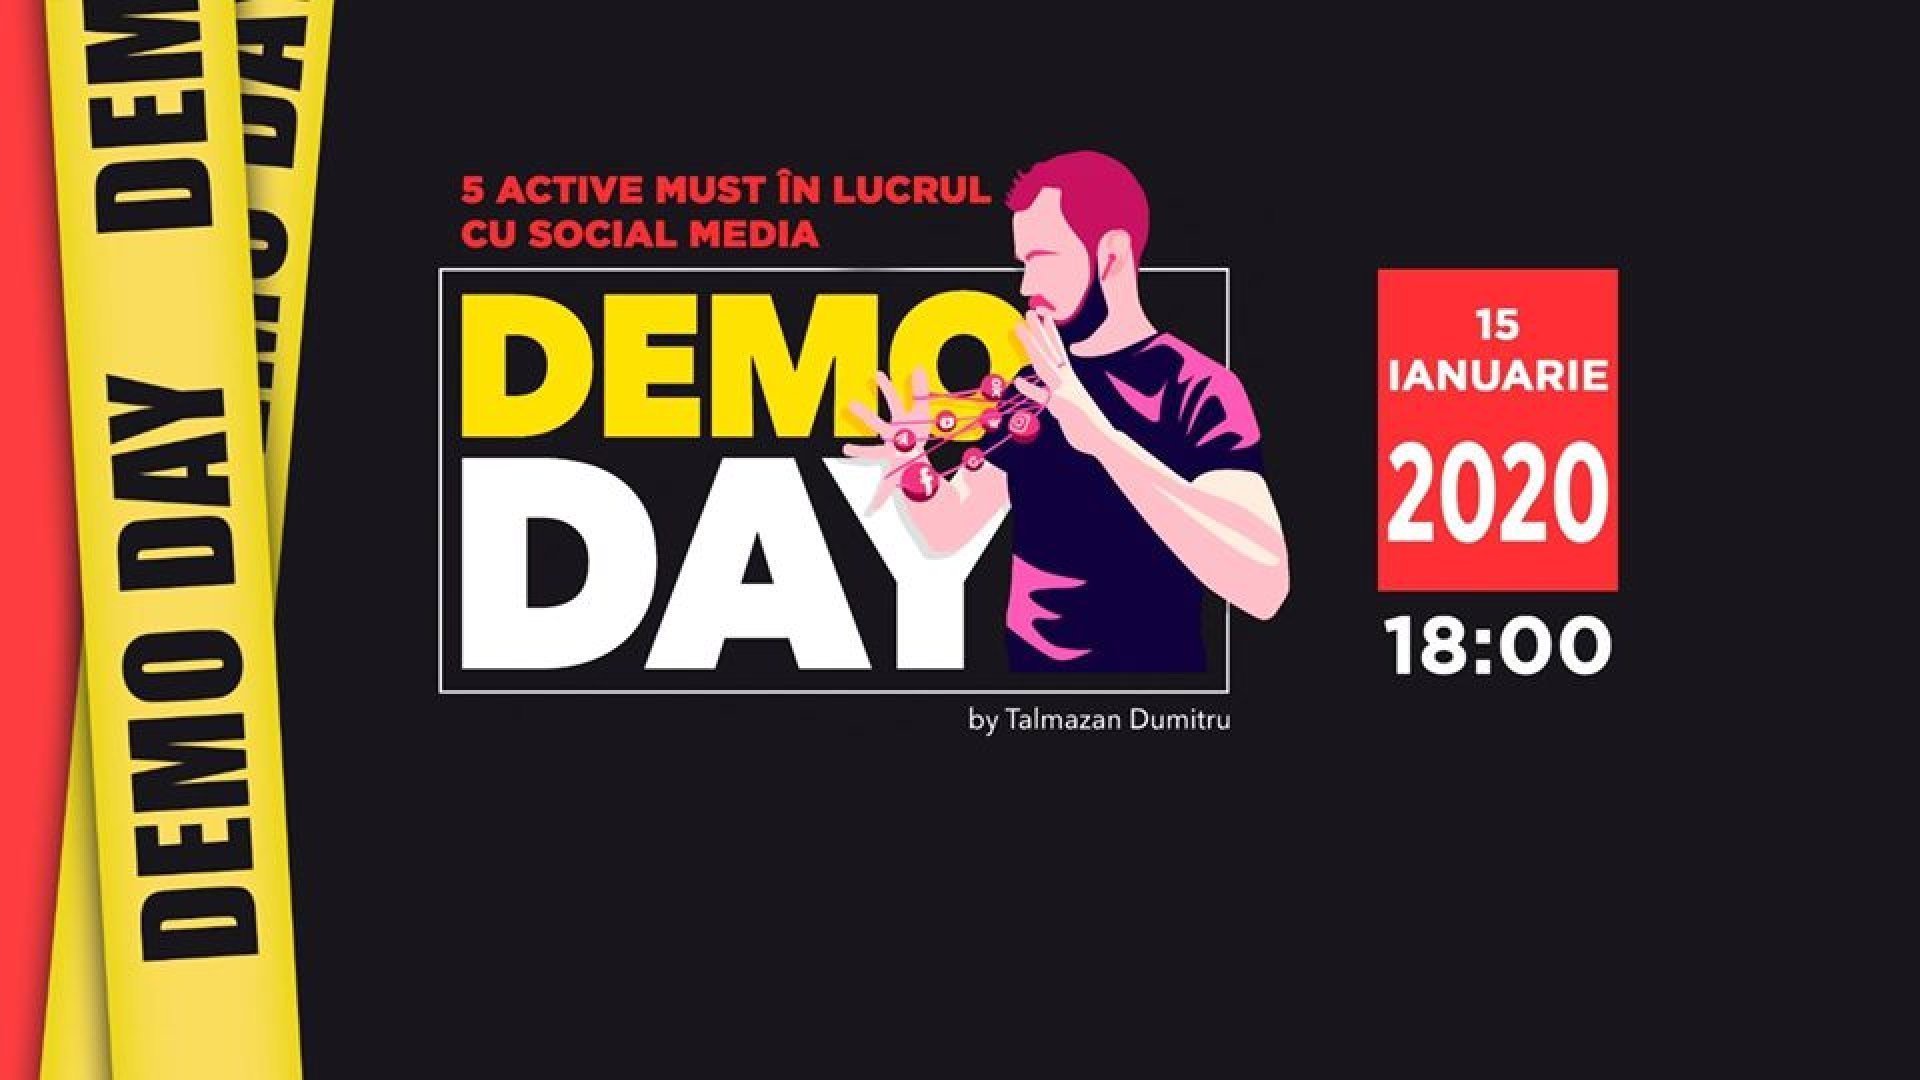 DemoDay - 5 active must în lucrul cu Social Media în 2020 | 24.02.2020